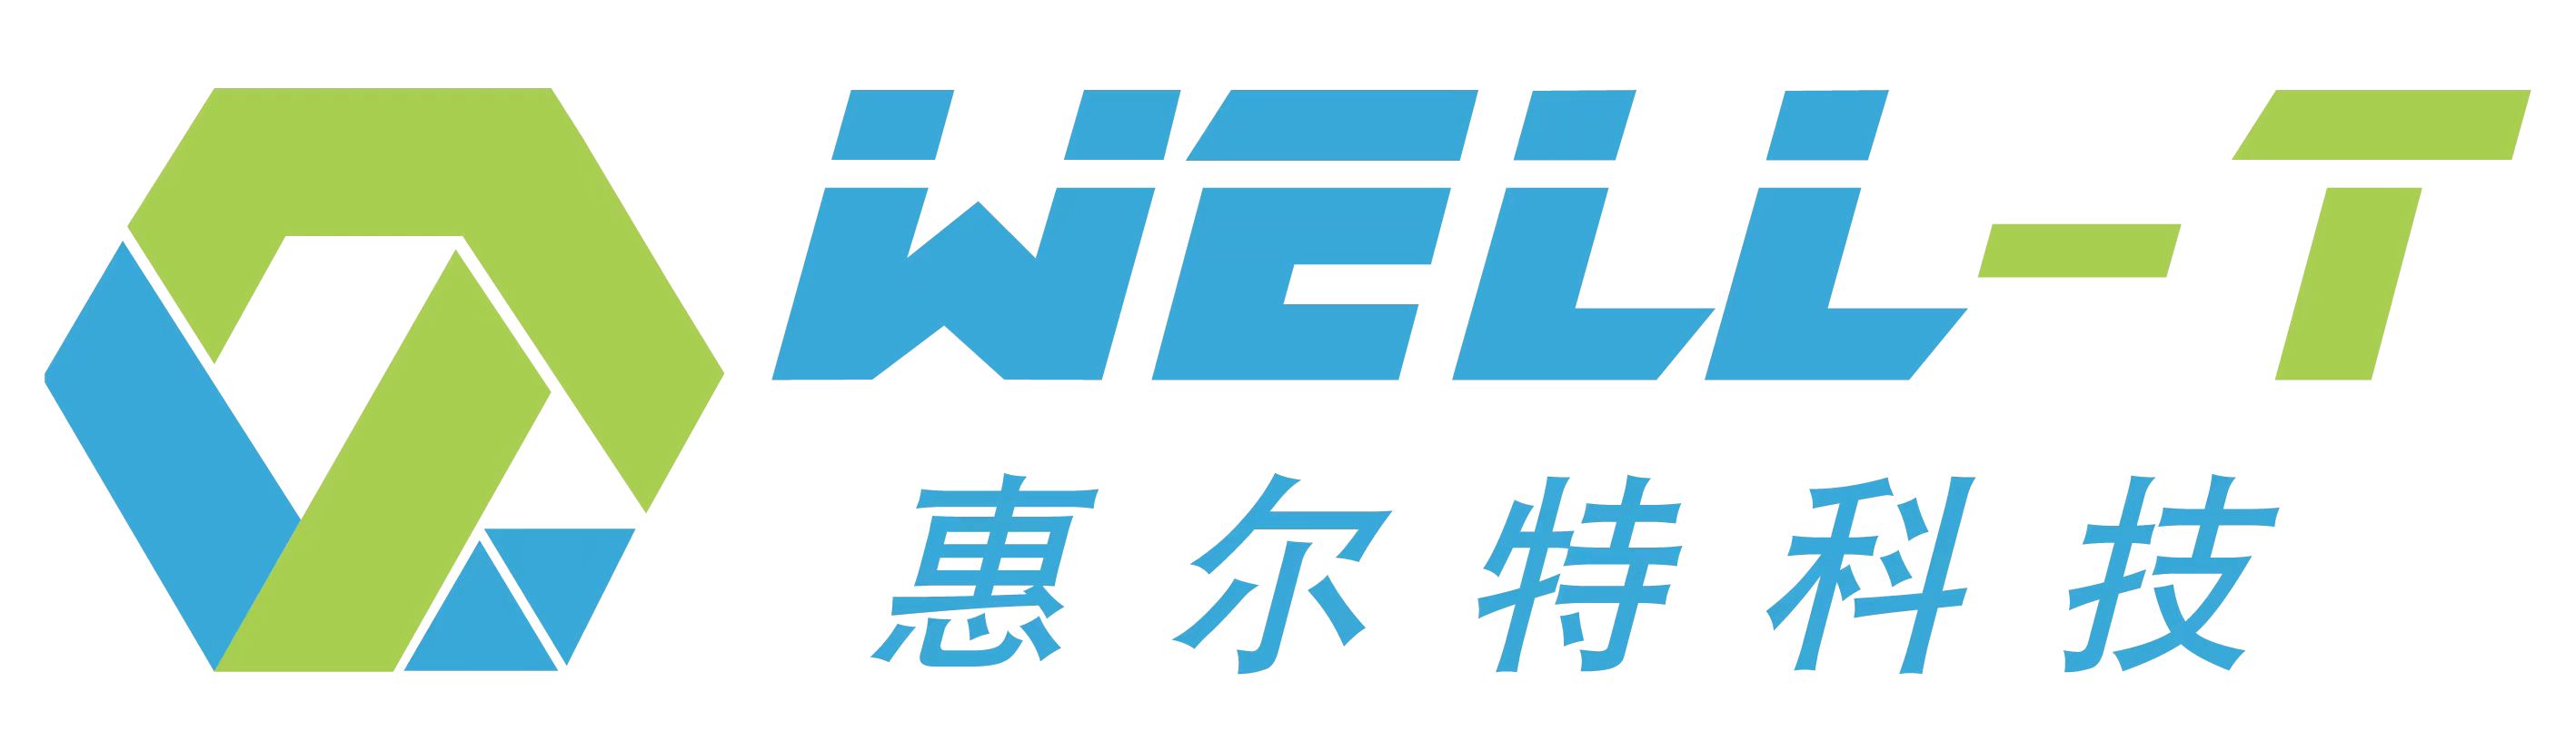 Guangdong Well-T Nanotech Co., Ltd._logo